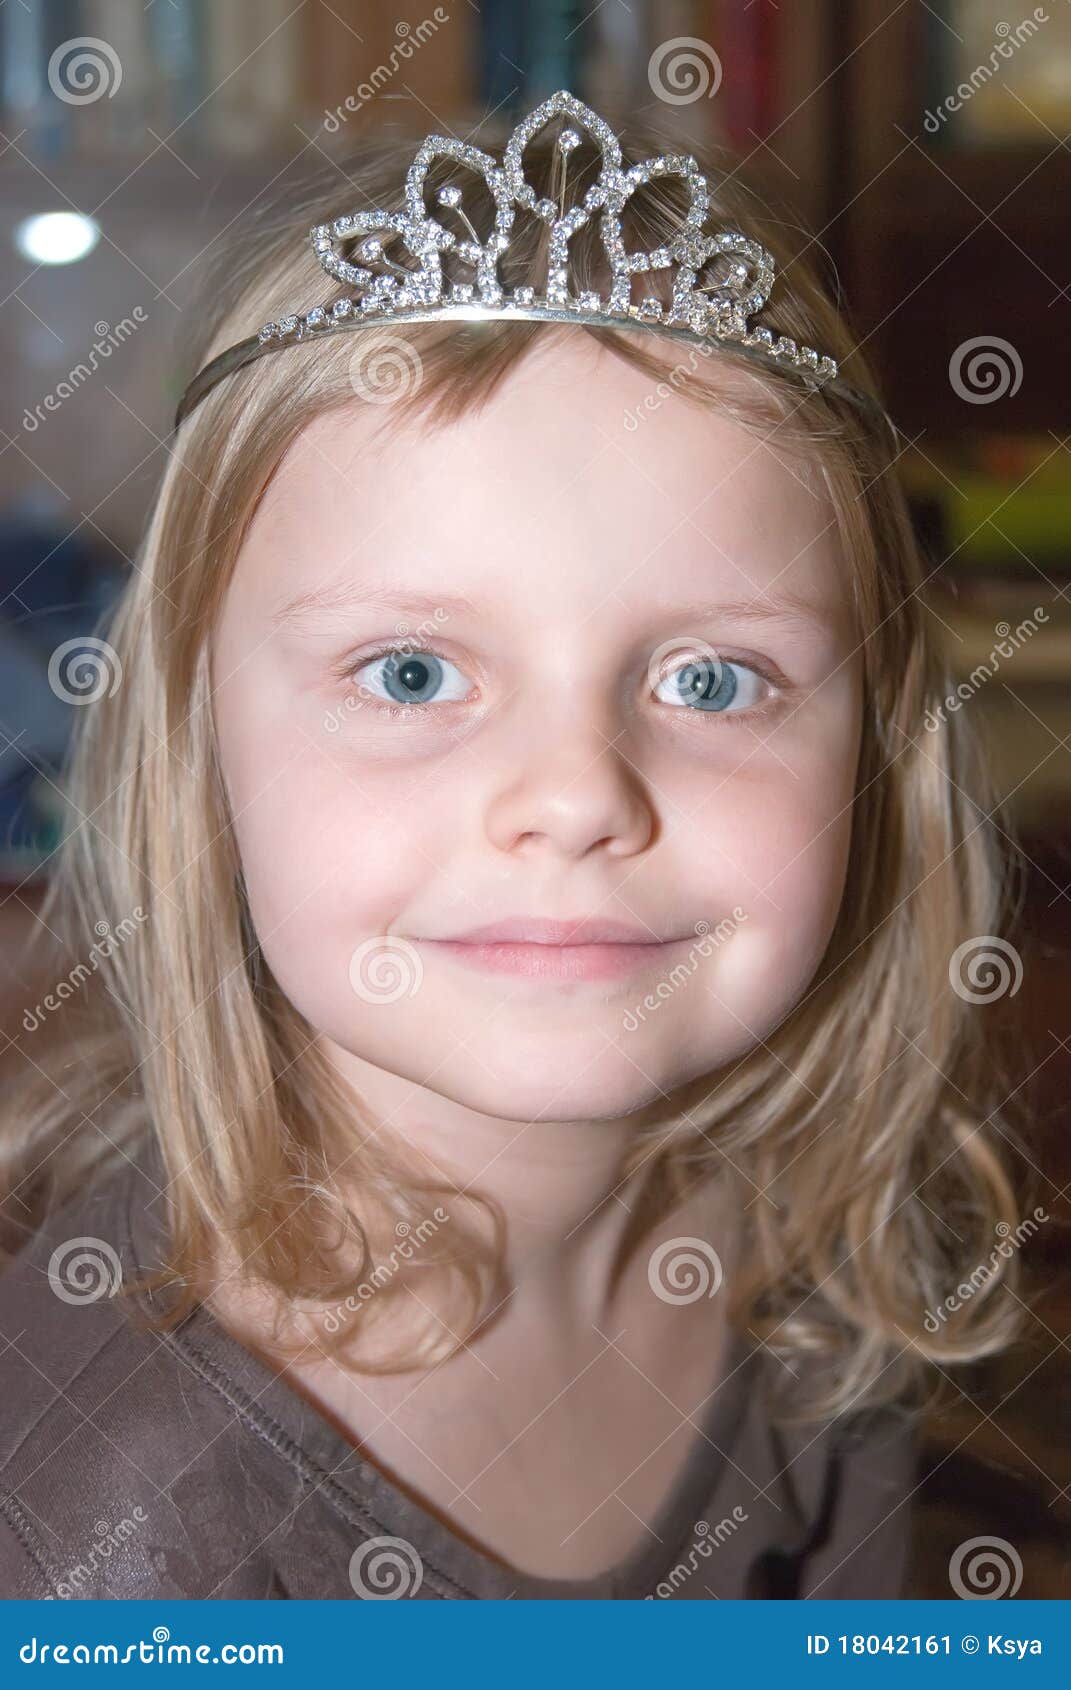 爆款儿童皇冠新娘头饰生日皇冠蛋糕皇冠手工皇冠珍珠皇冠女王皇冠-阿里巴巴